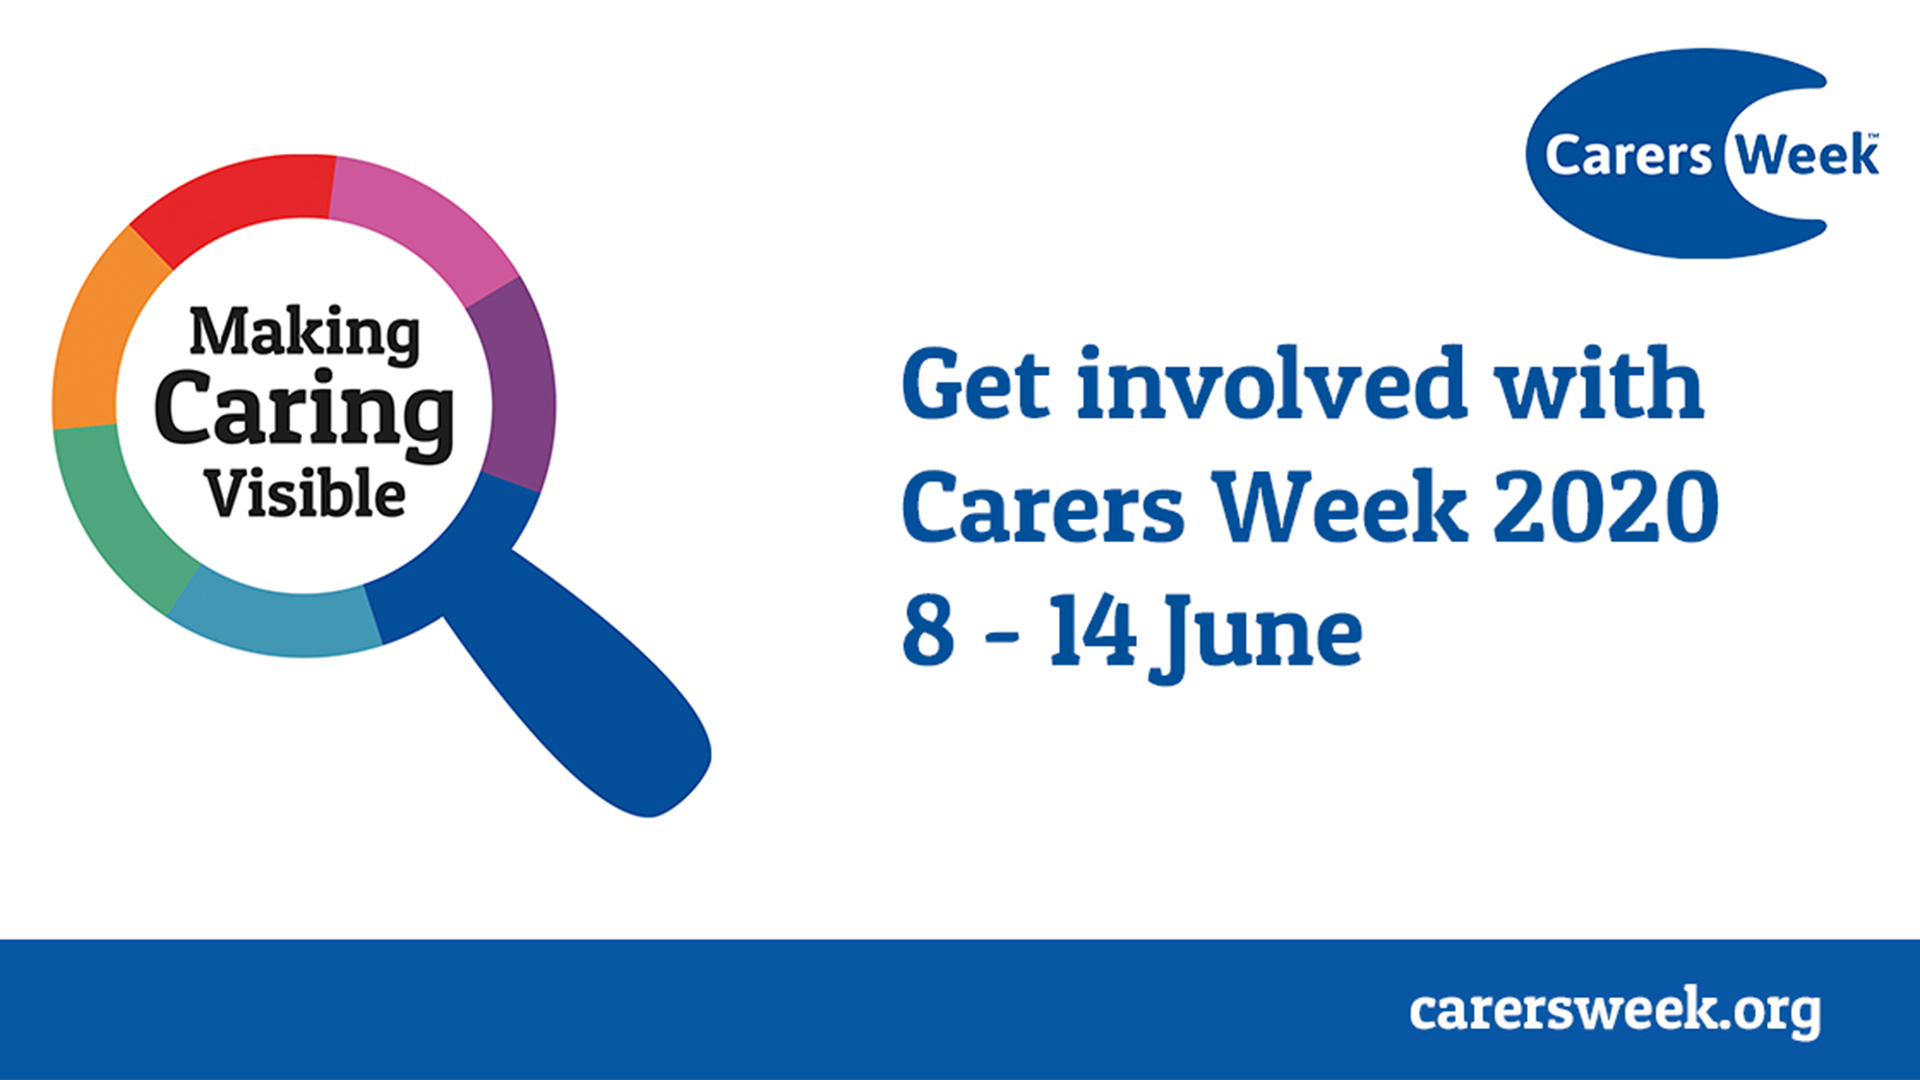 Carers week